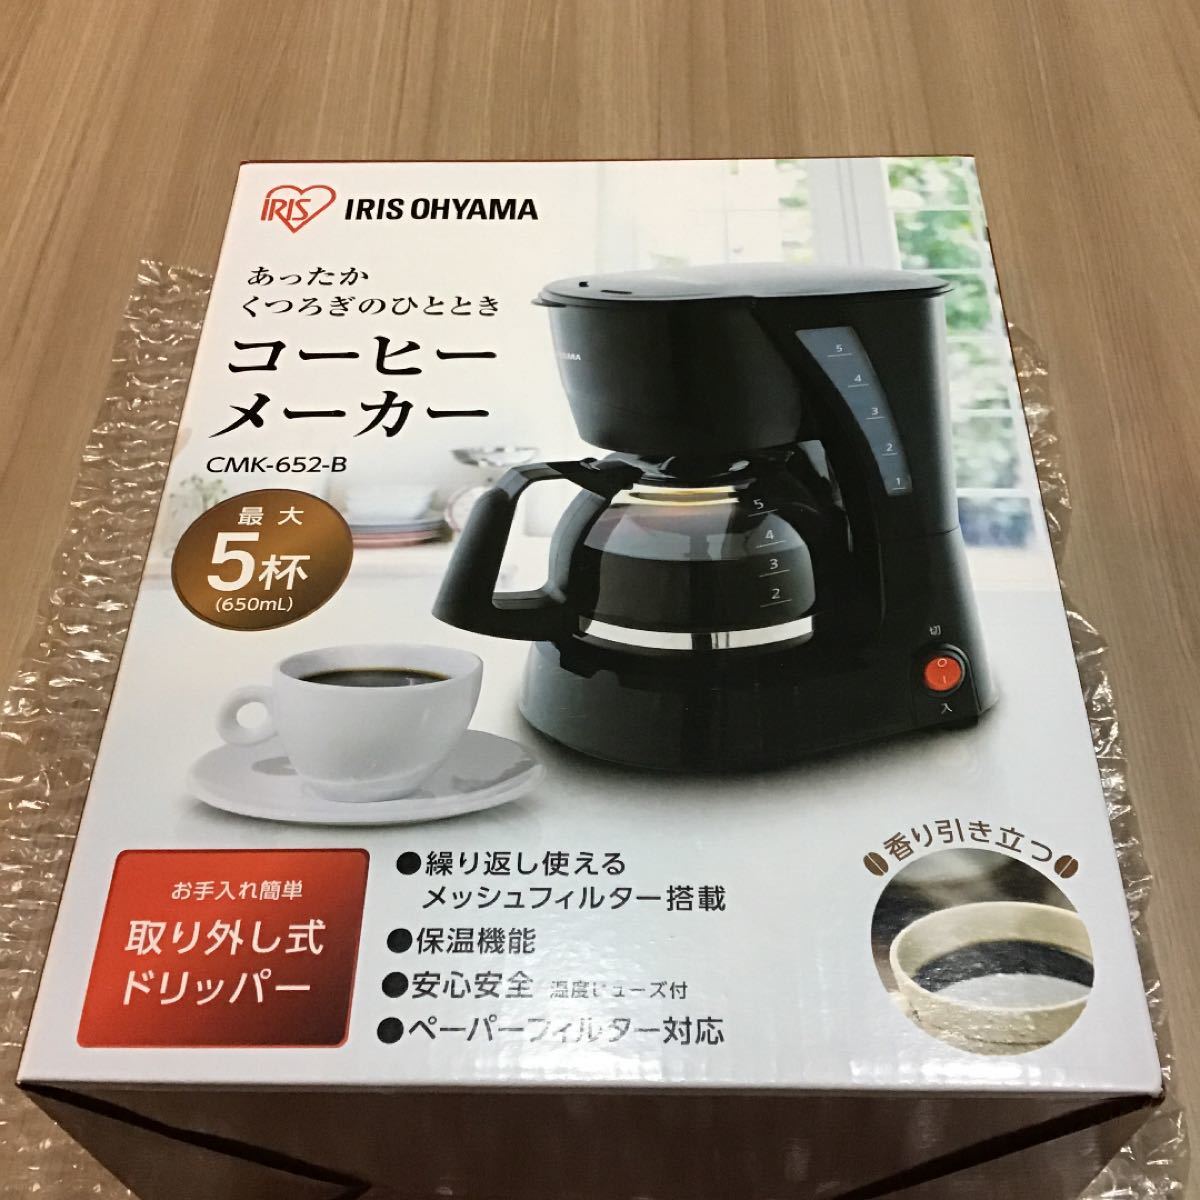 コーヒーメーカー アイリスオーヤマ 新品未開封 送料込み 保証書証明あり メッシュフィルター搭載 ペーパーフィルター対応 保温機能